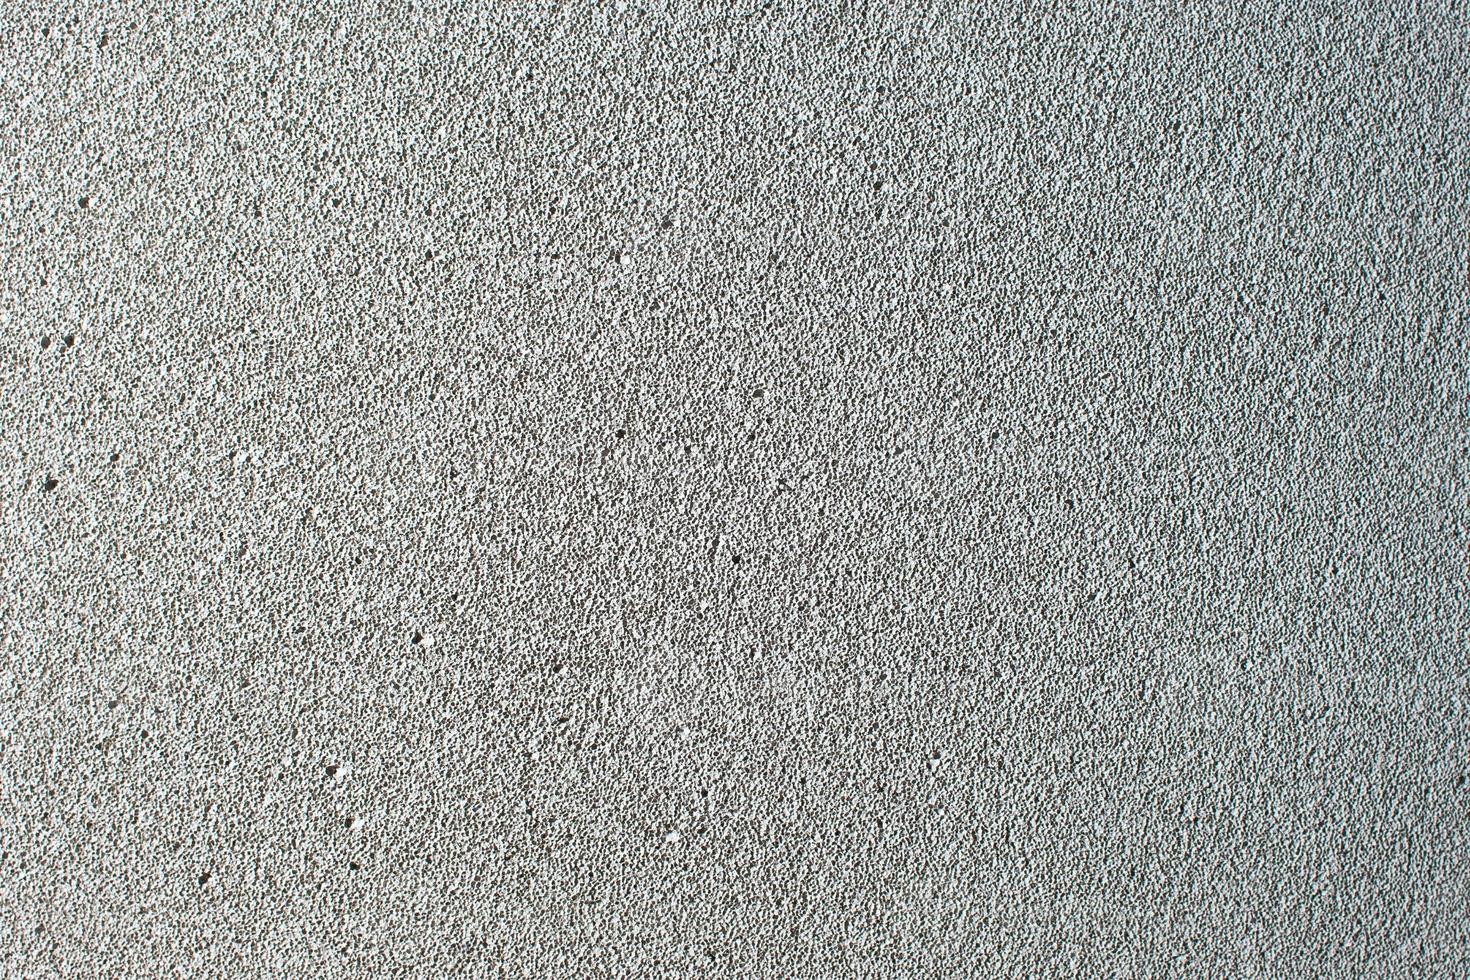 pared de bloques de hormigón celular como fondo gris. ladrillo de construcción ligera aislado en blanco. bloque de yeso espumado ligero aislado en blanco. foto